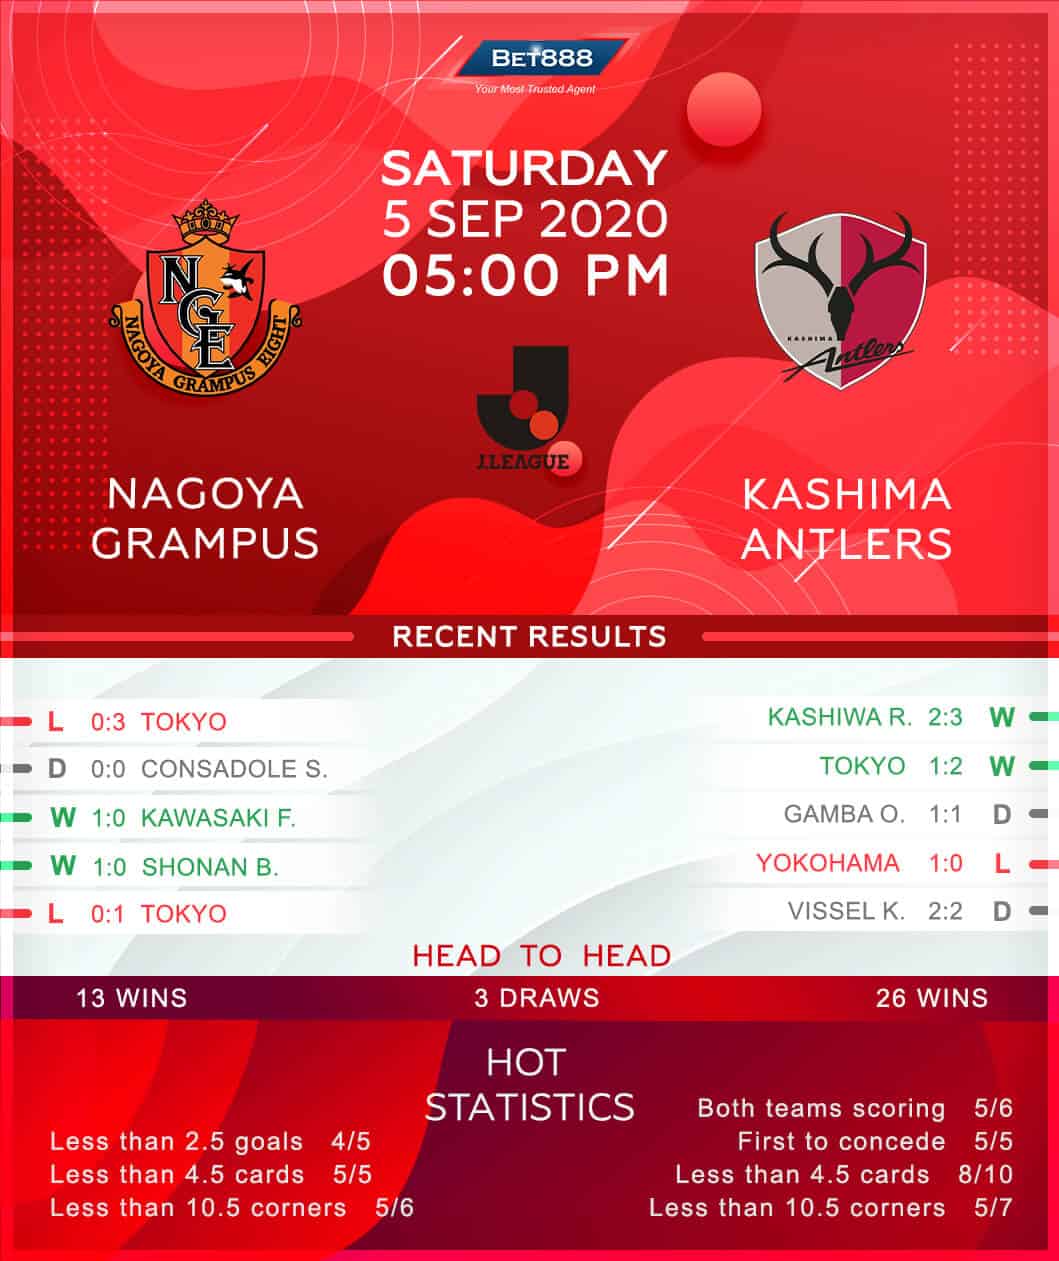 Nagoya Grampus vs Kashima Antlers 05/09/20